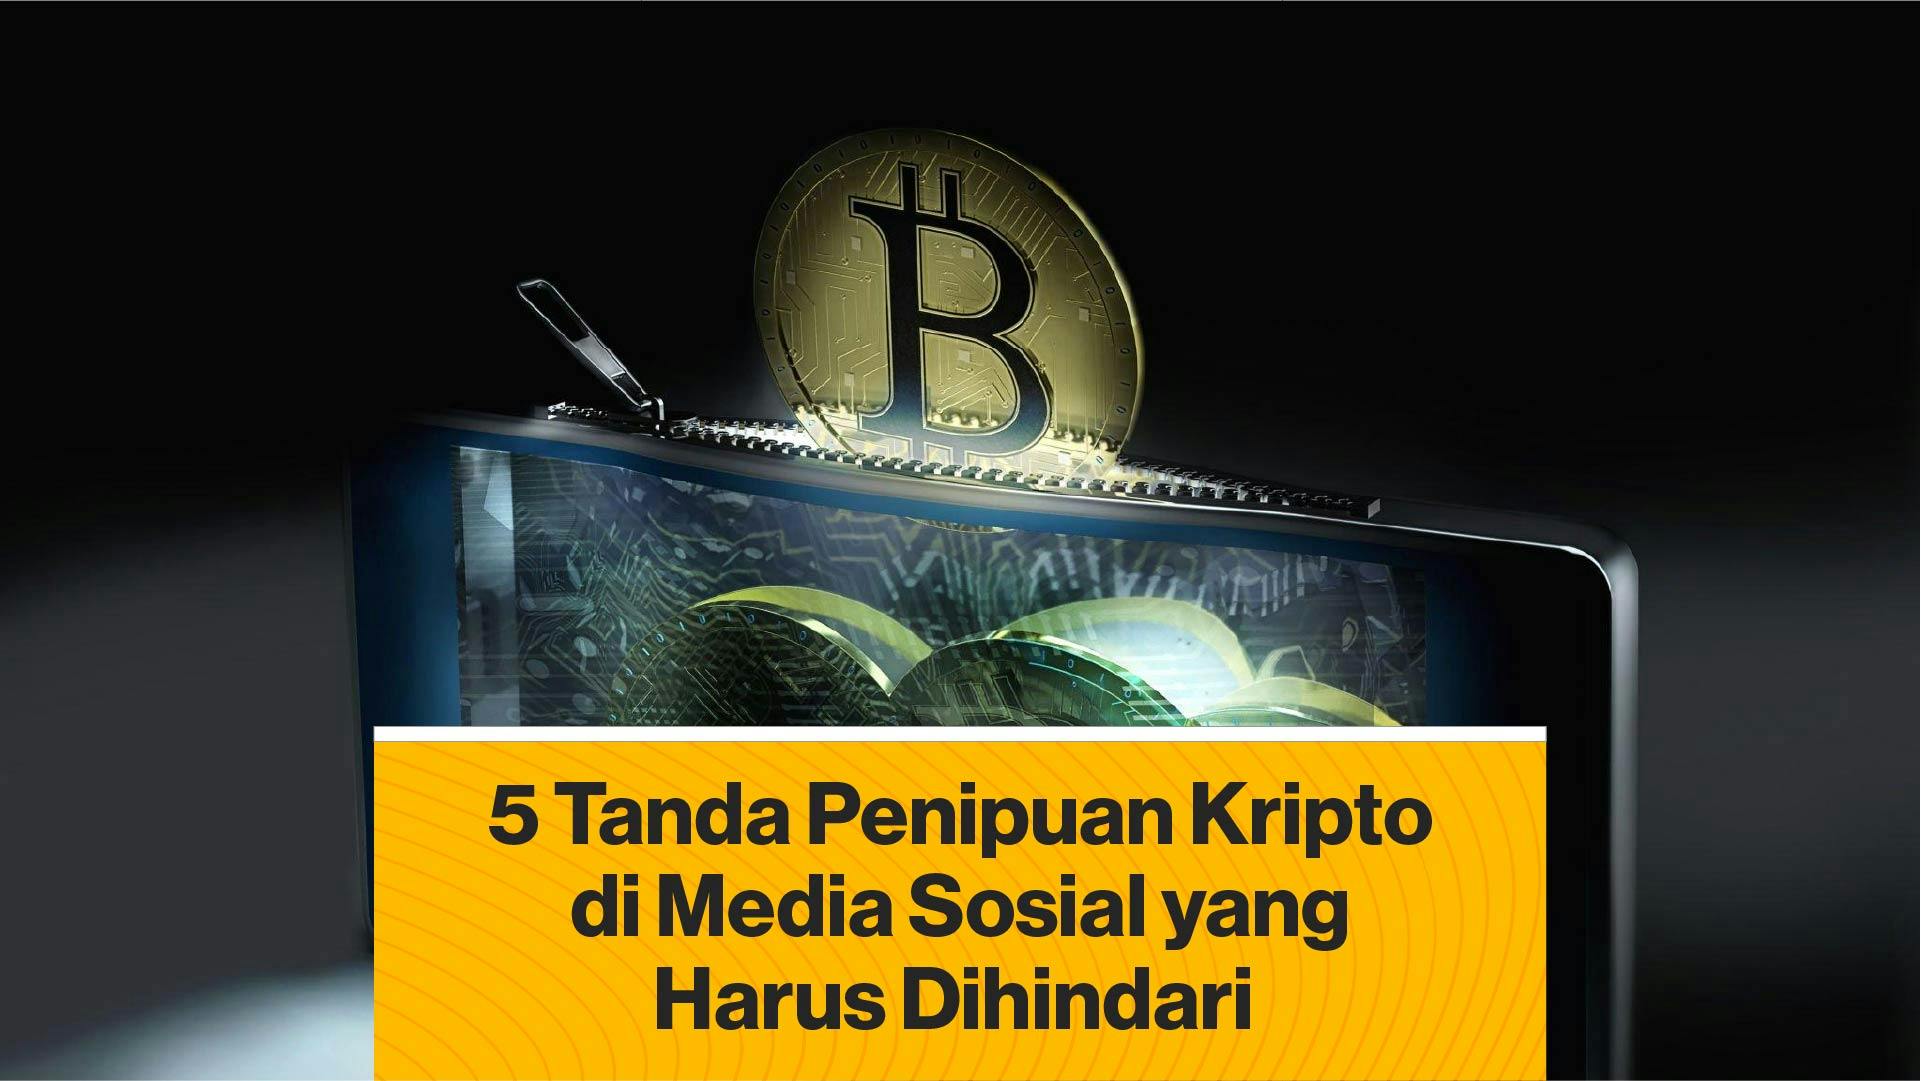 5 Tanda Penipuan Kripto di Media Sosial yang Harus Dihindari (Coindesk Indonesia)